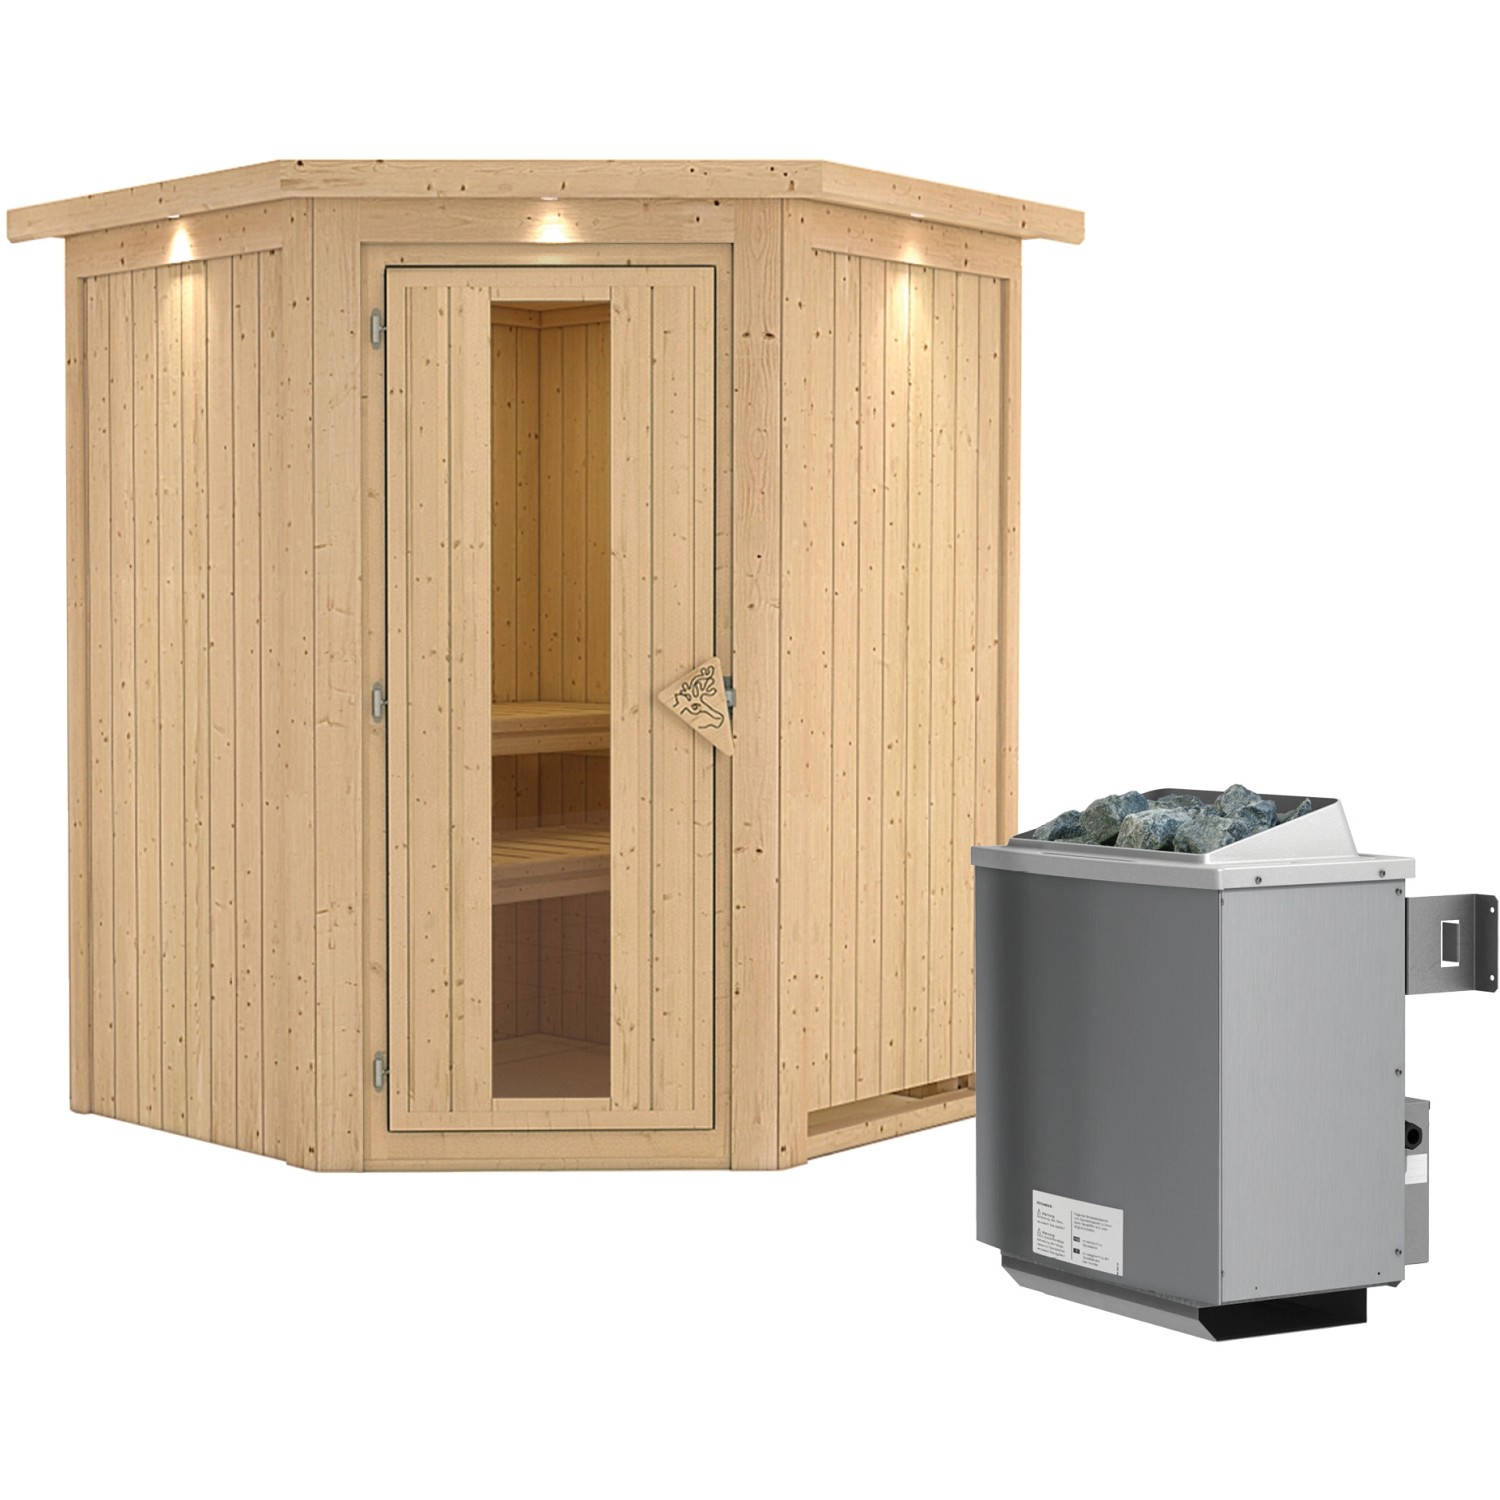 Karibu Sauna Lyra inkl. Ofen 9 kW integr. Steuerung, Dachkranz, Energiespar günstig online kaufen